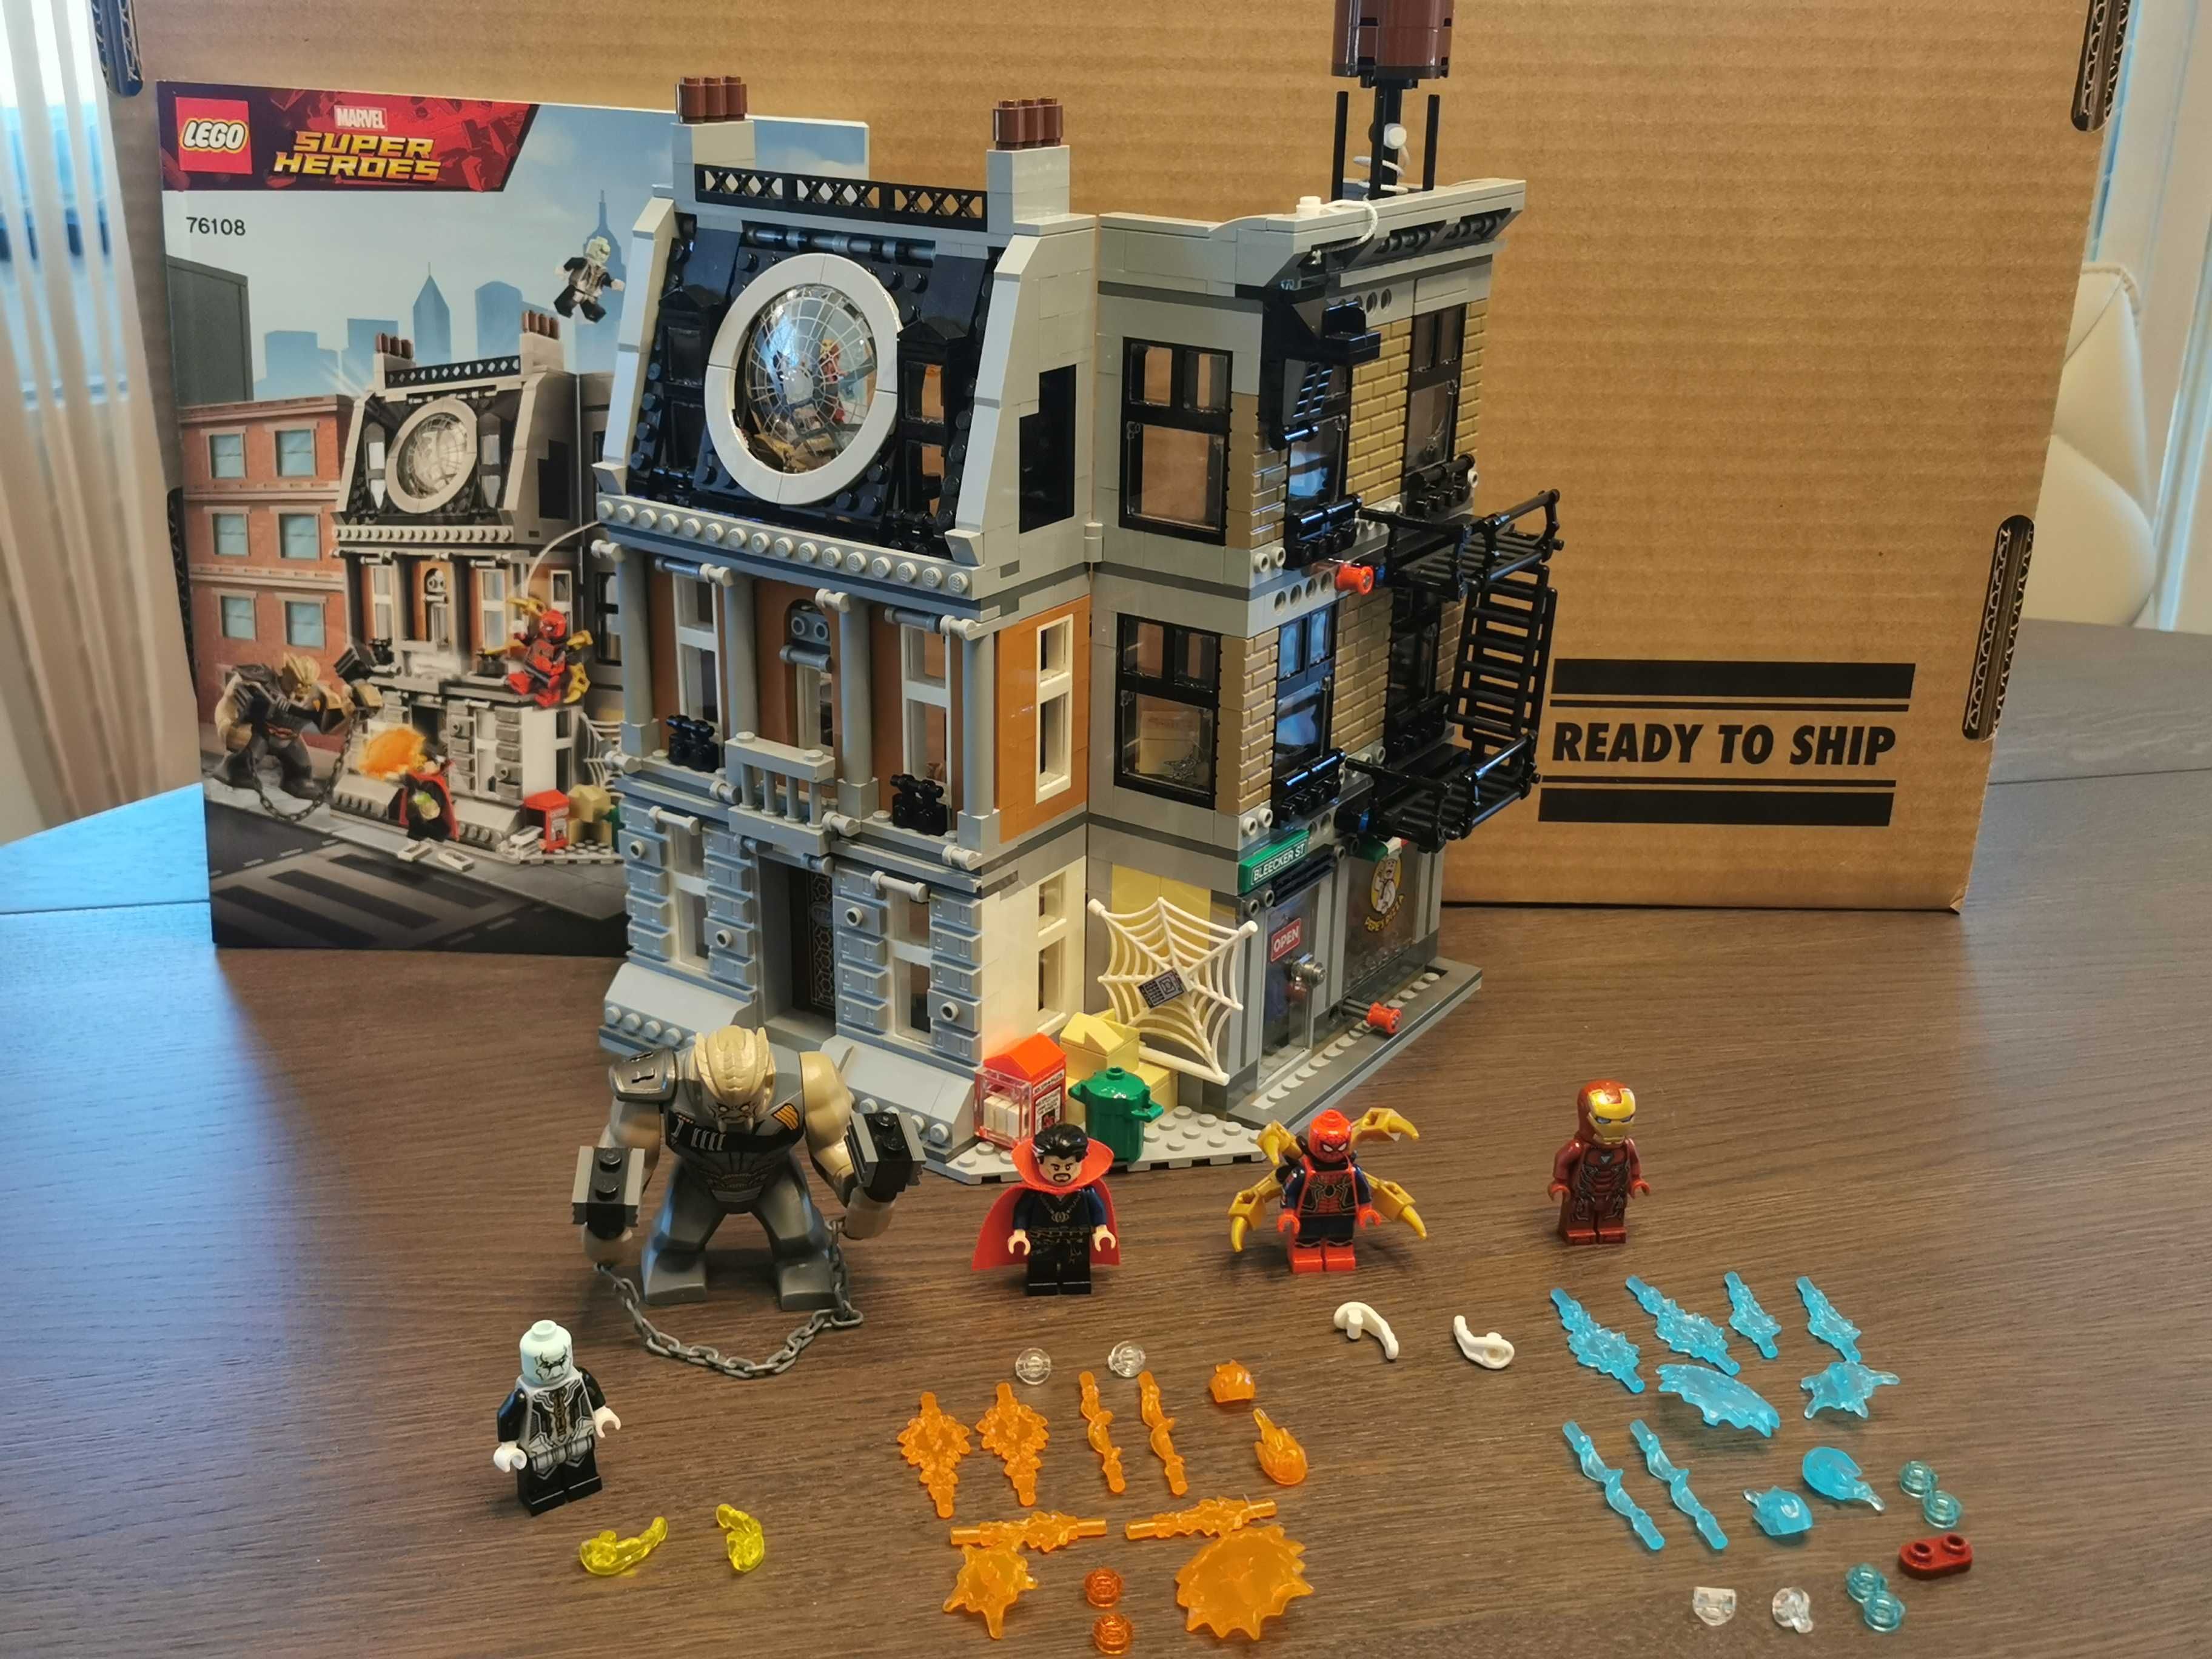 Разпродажба на LEGO модели (сглобени, от витрина)